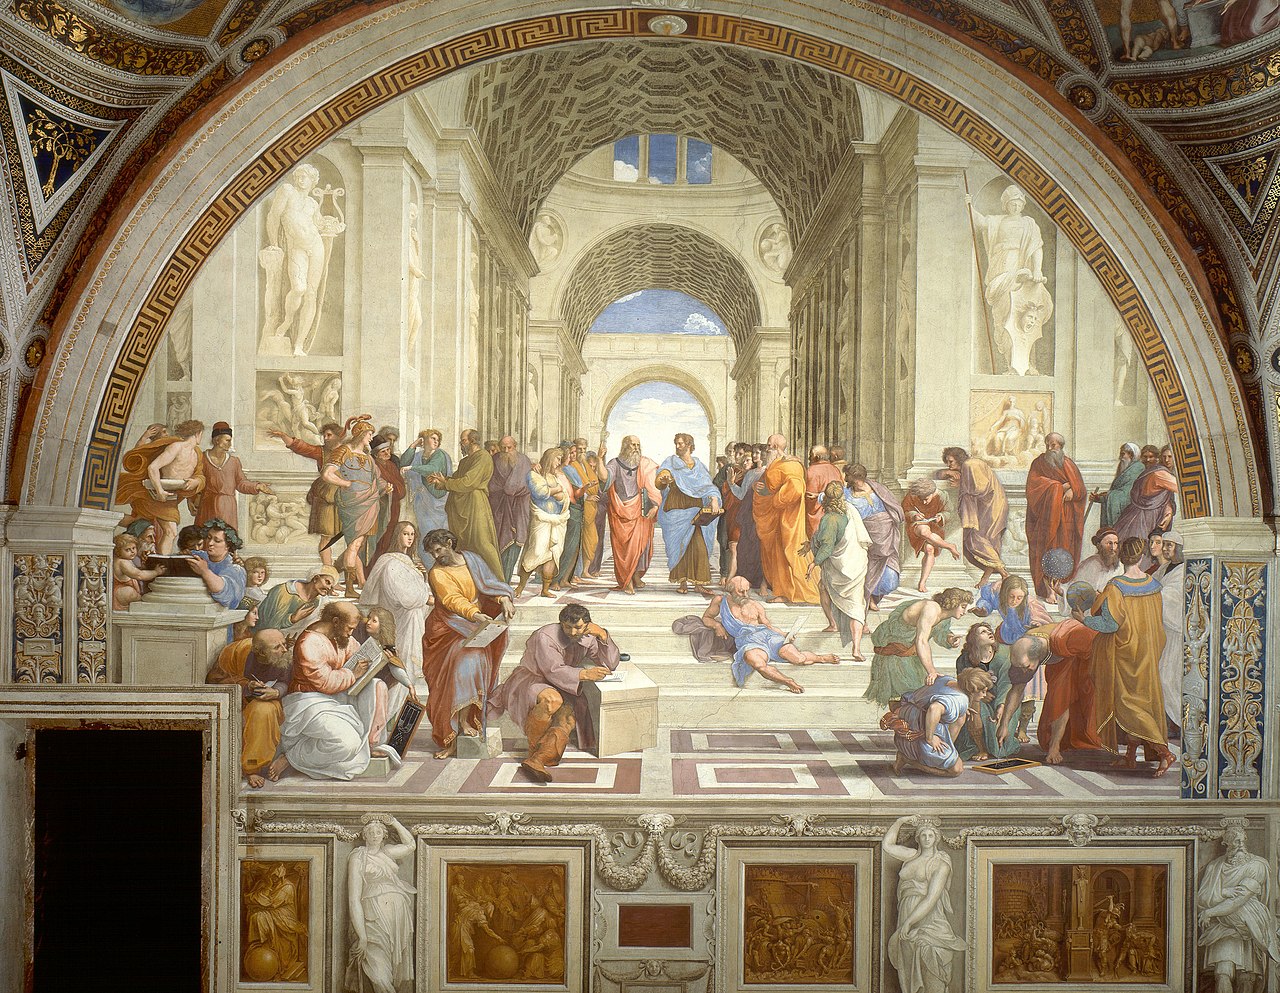 Kurš ir freskas "Atēnu skola" autors?